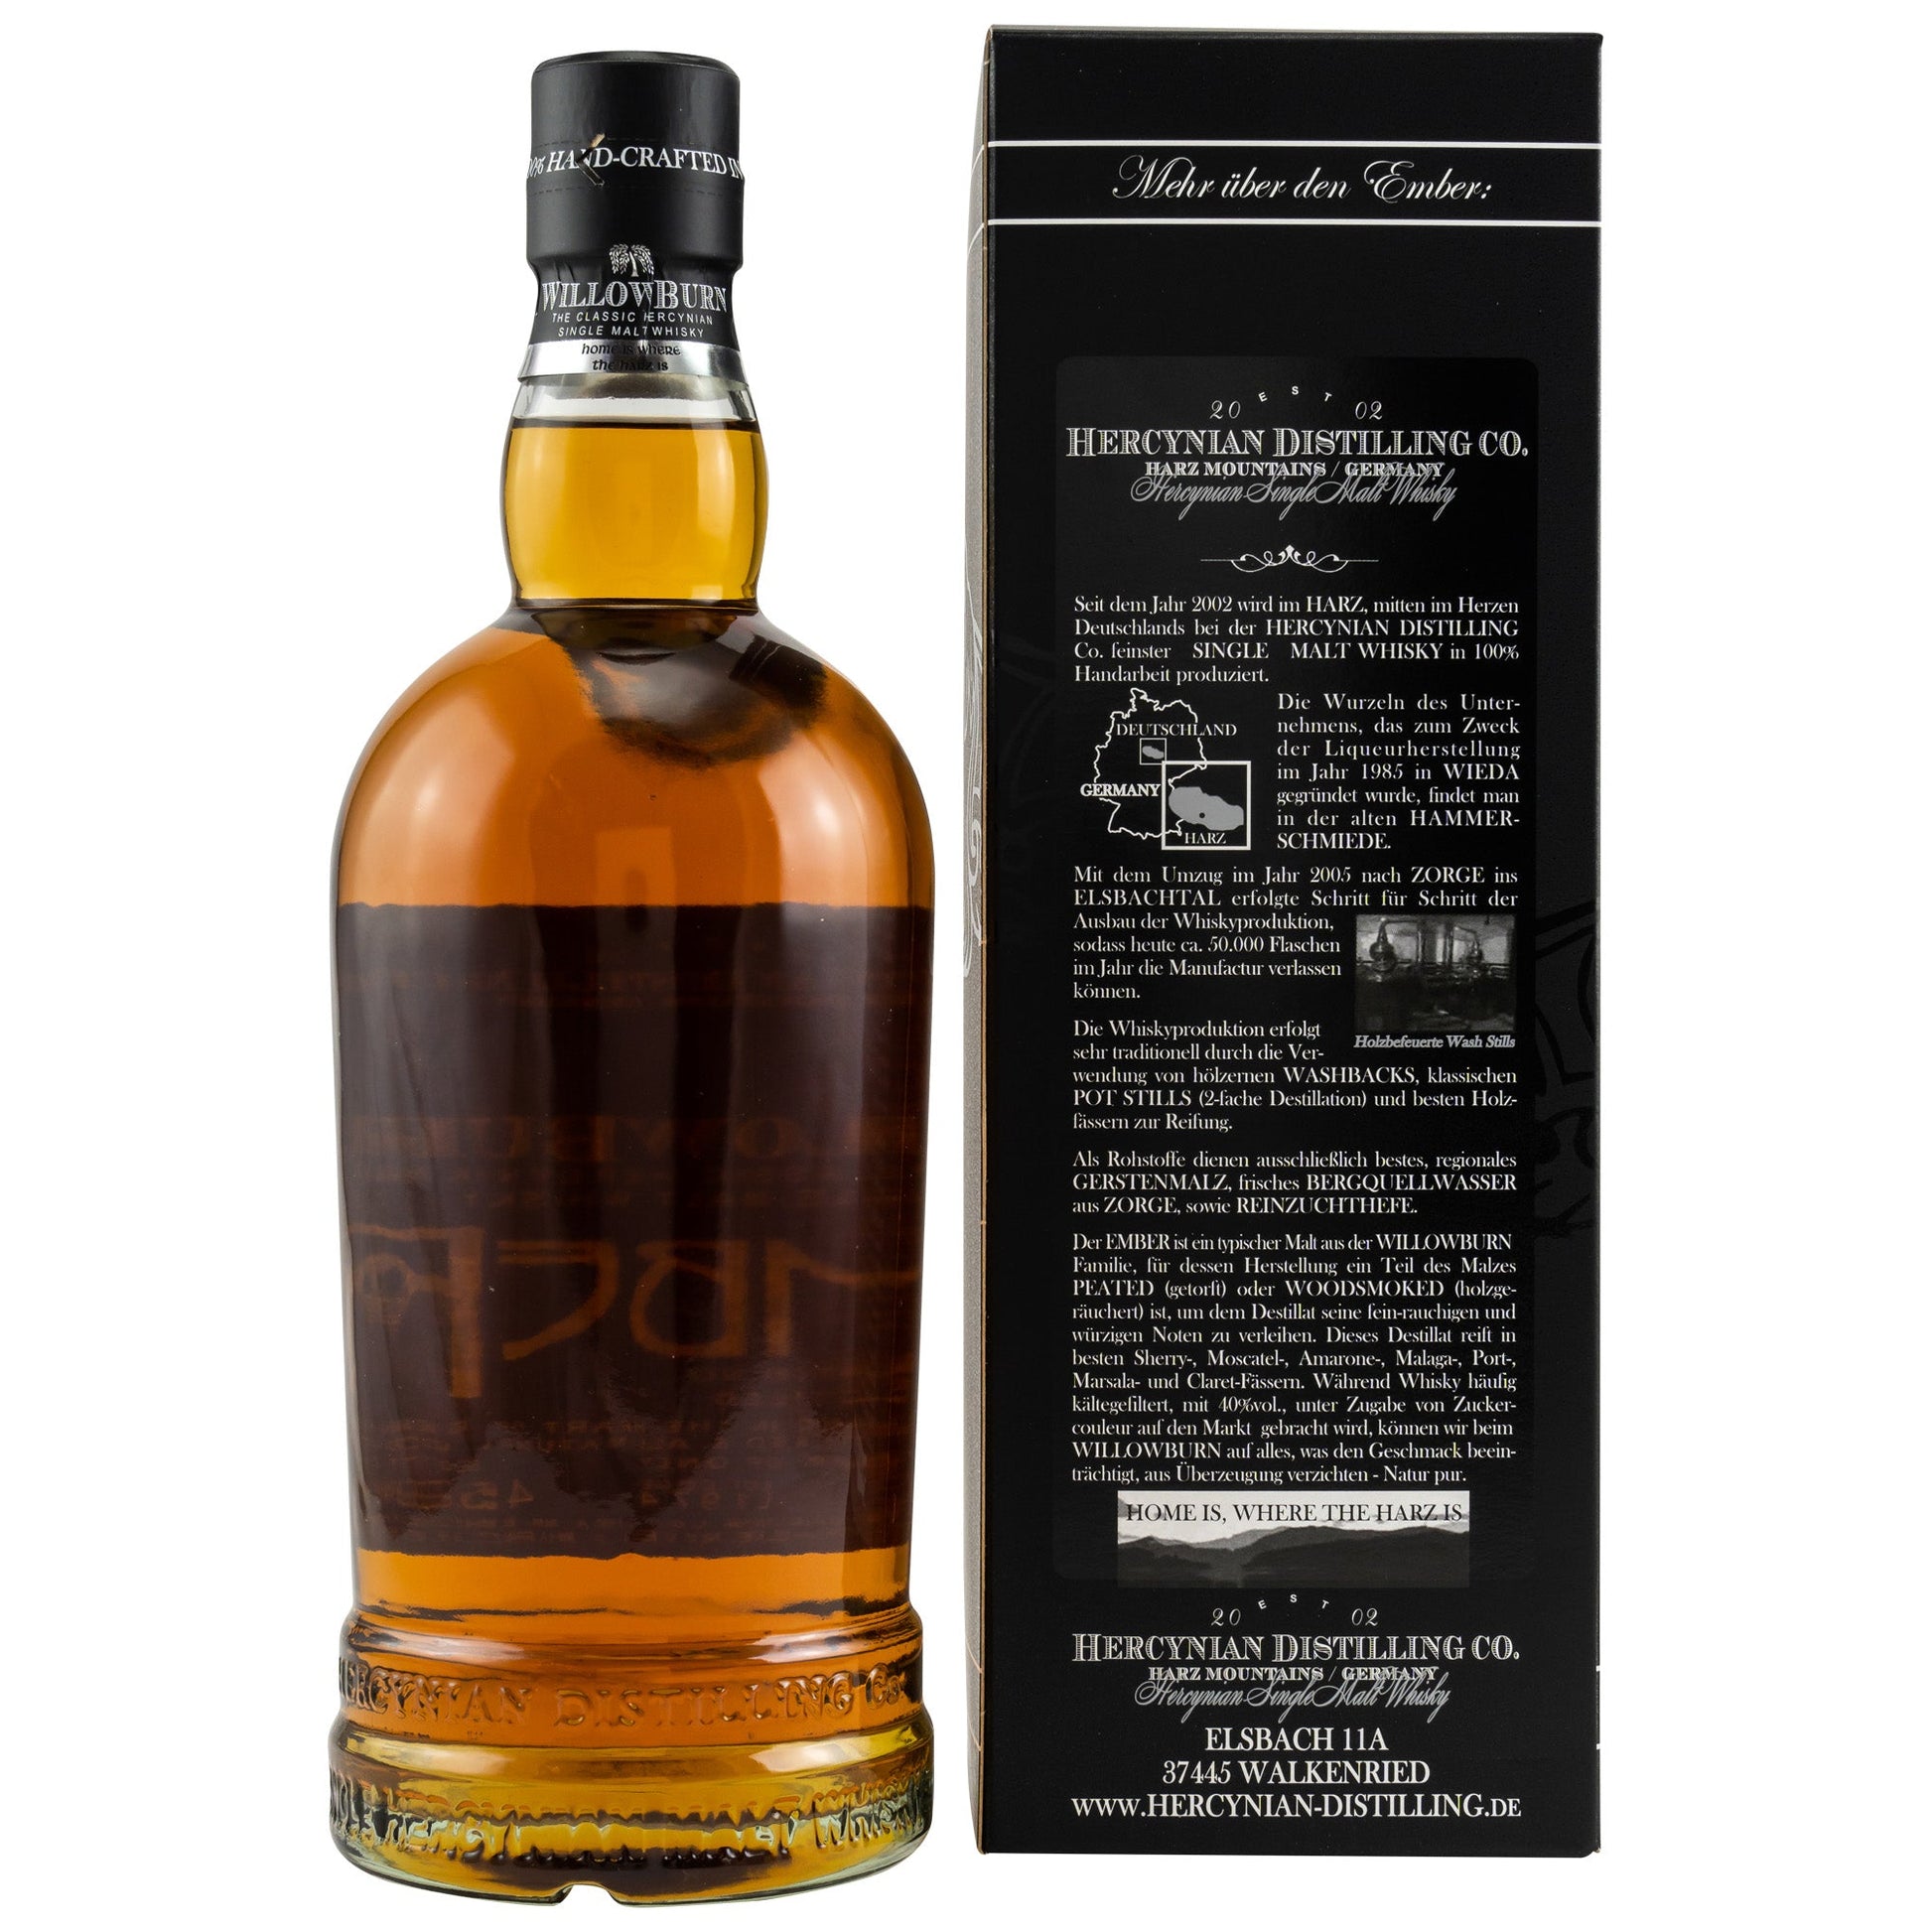 Willowburn | Ember | Batch 001 (2020) | German Whisky | 0,7l | 45,9%GET A BOTTLE